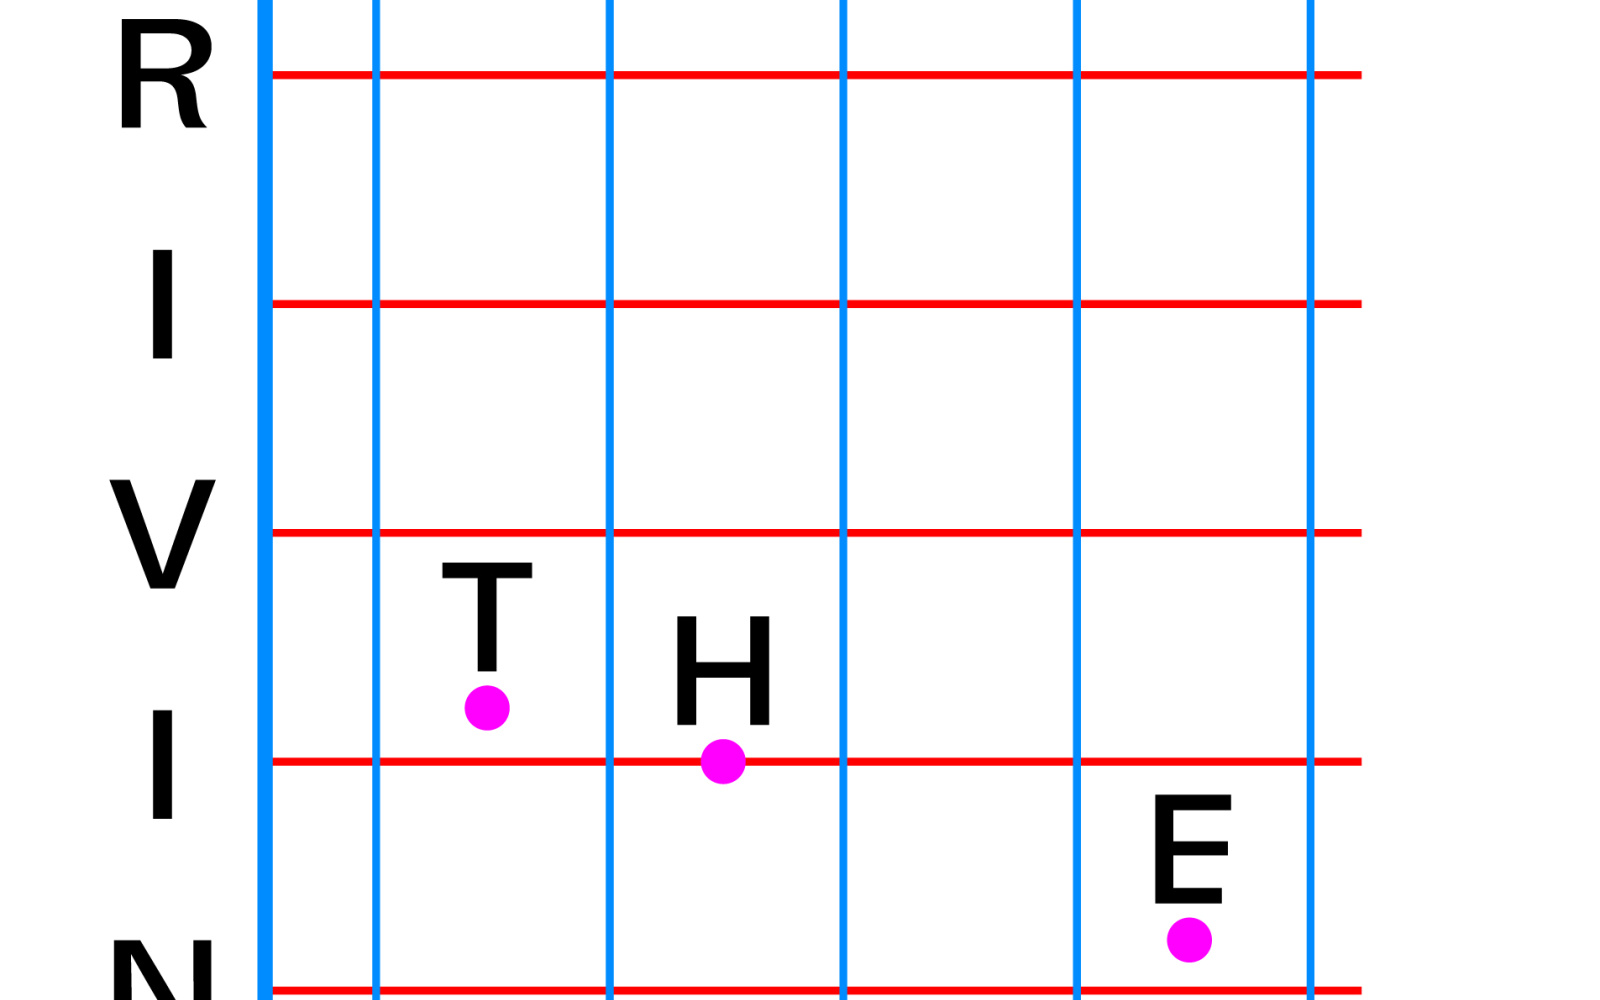 Ein Koordinatensystem. Die senkrechte Achse heißt "Drive" und die waagerechte Achse heißt "Human", in der Mitte sind 3 Koordiantenpunkte, die "The" auf sich tragen.